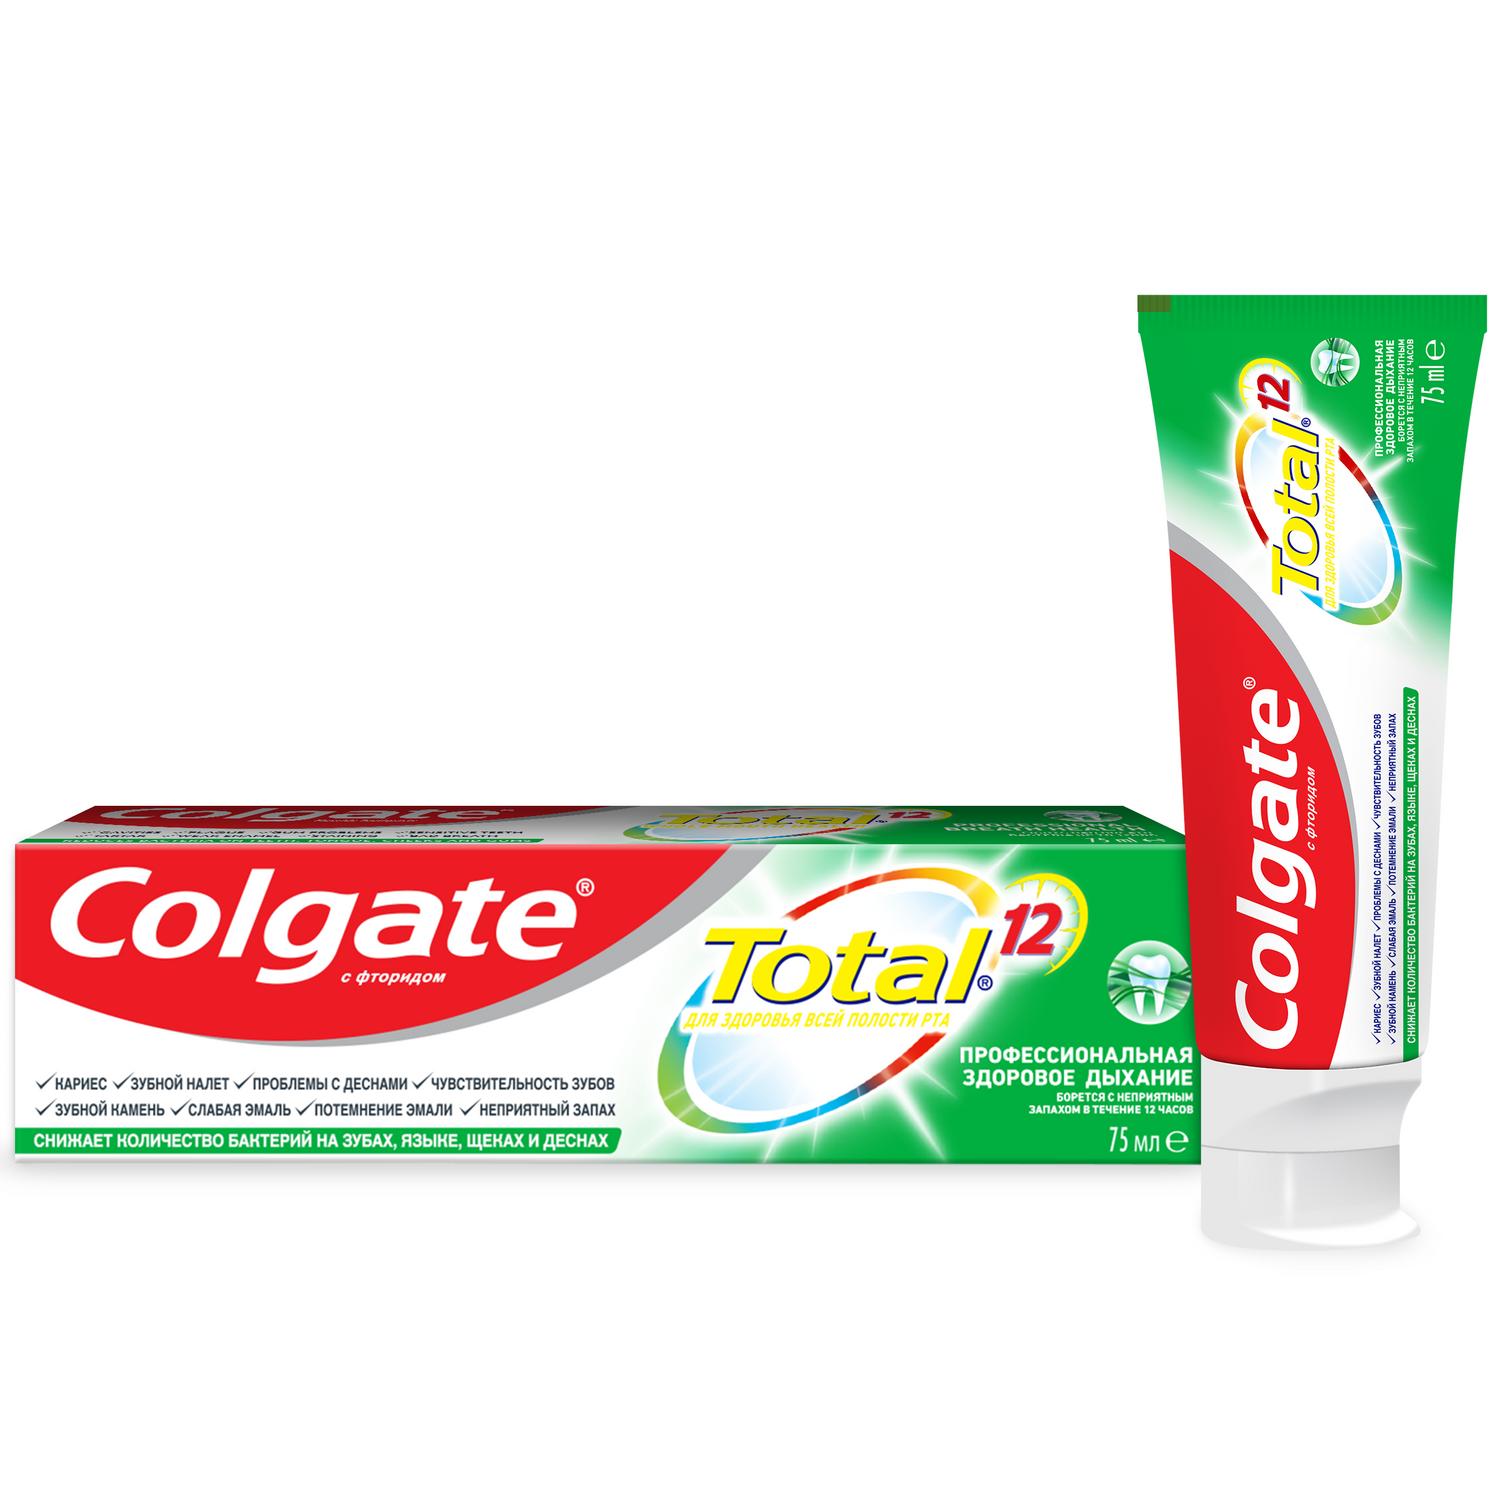 Зубная паста Colgate Total 12 Профессиональная Здоровое Дыхание 75 мл PL06623B - фото 1